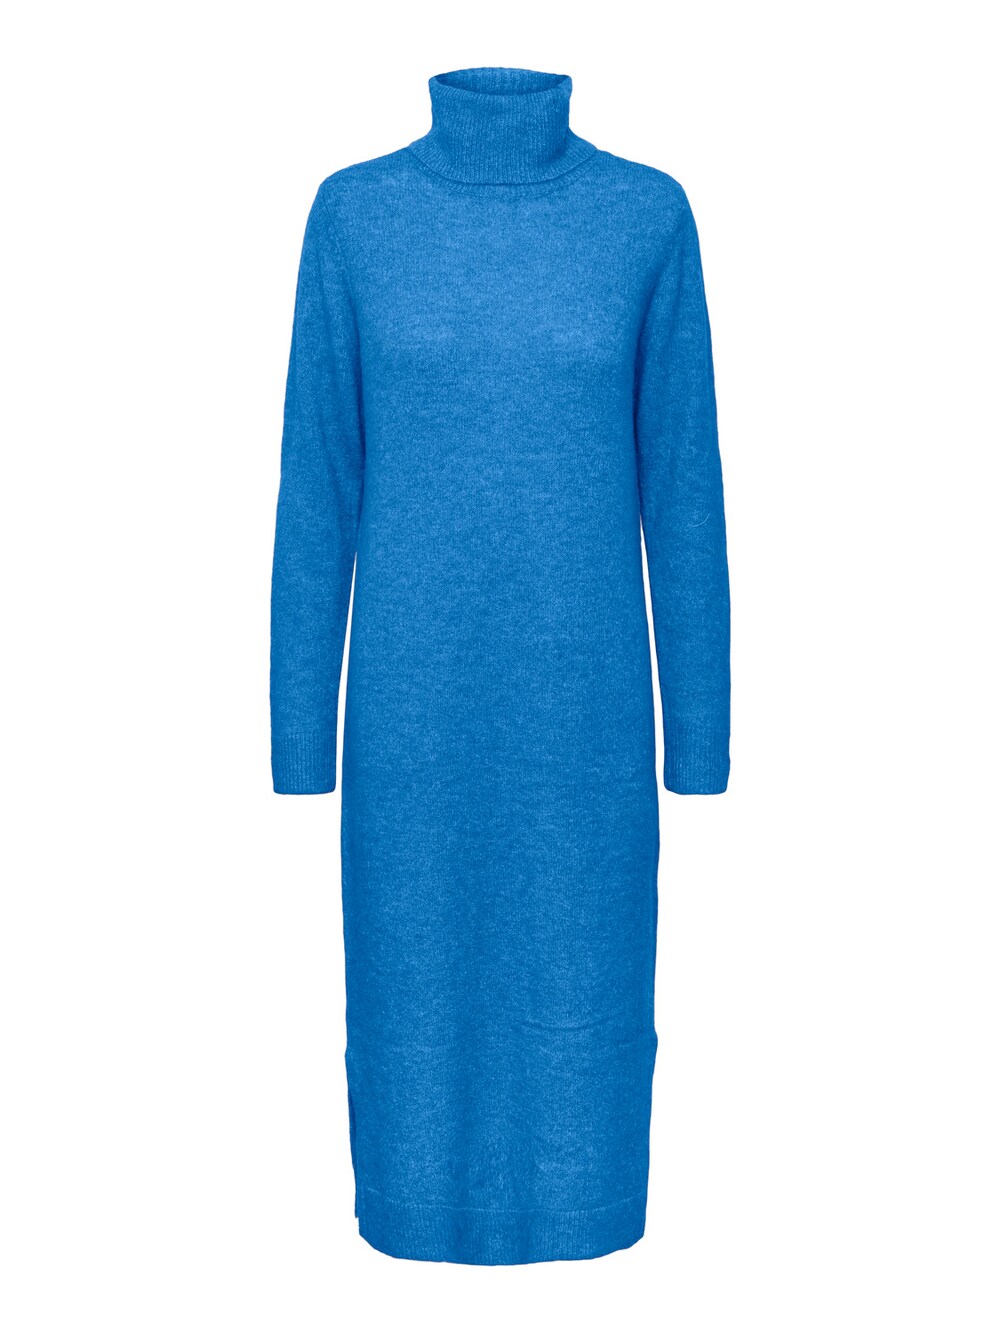 Вязанное платье Pieces JULIANA, синий вязанное платье pieces silla синий